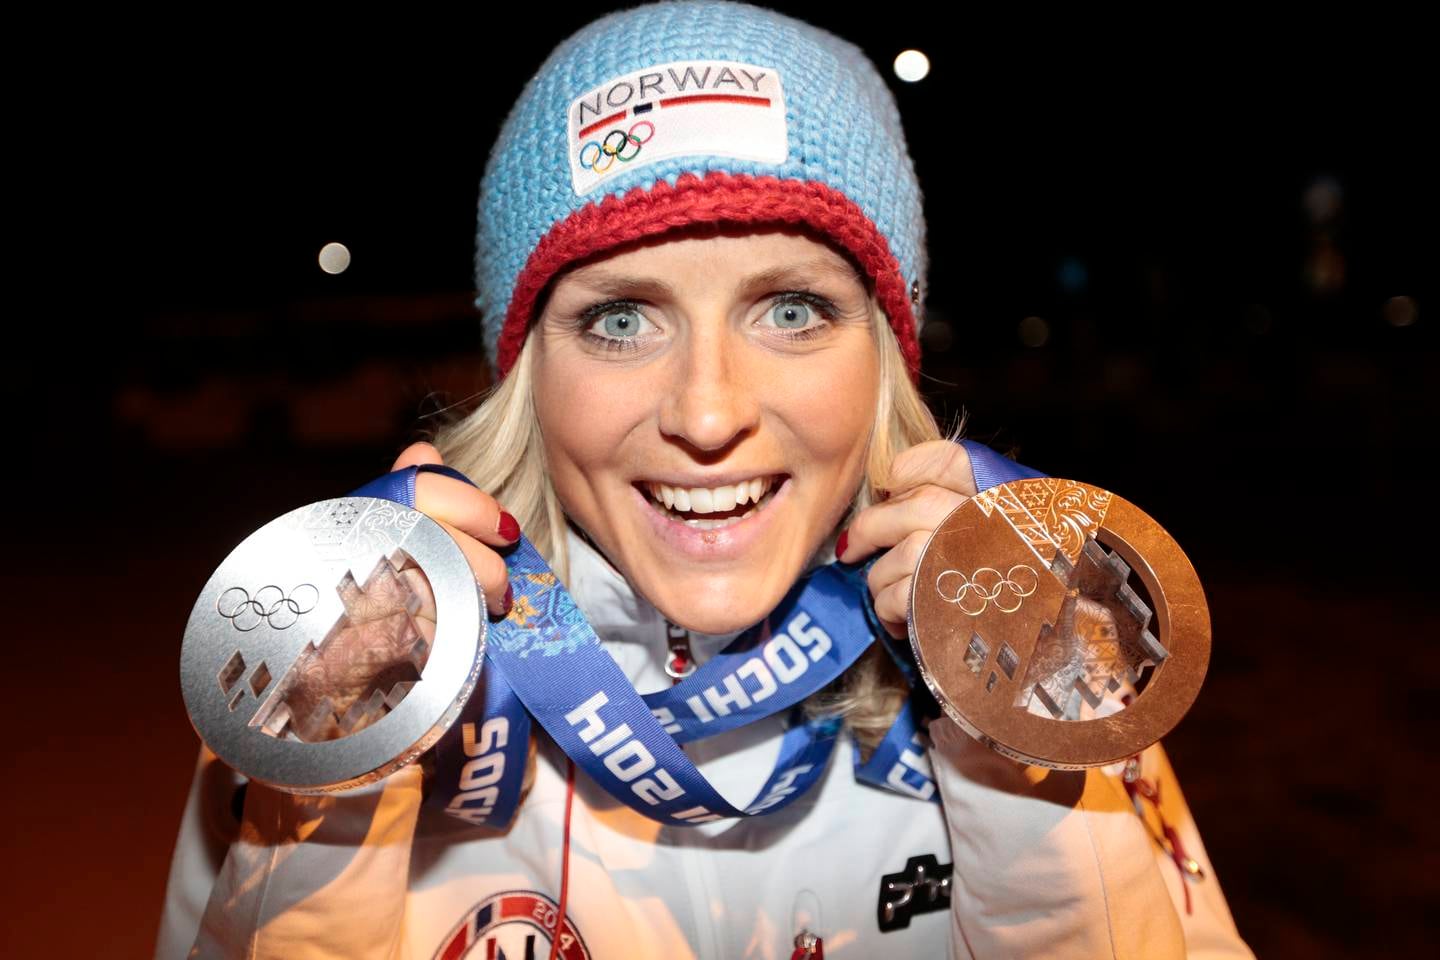 Sølv og bronse ble fasit i 2014. Får Therese Johaug gull i OL 2022?